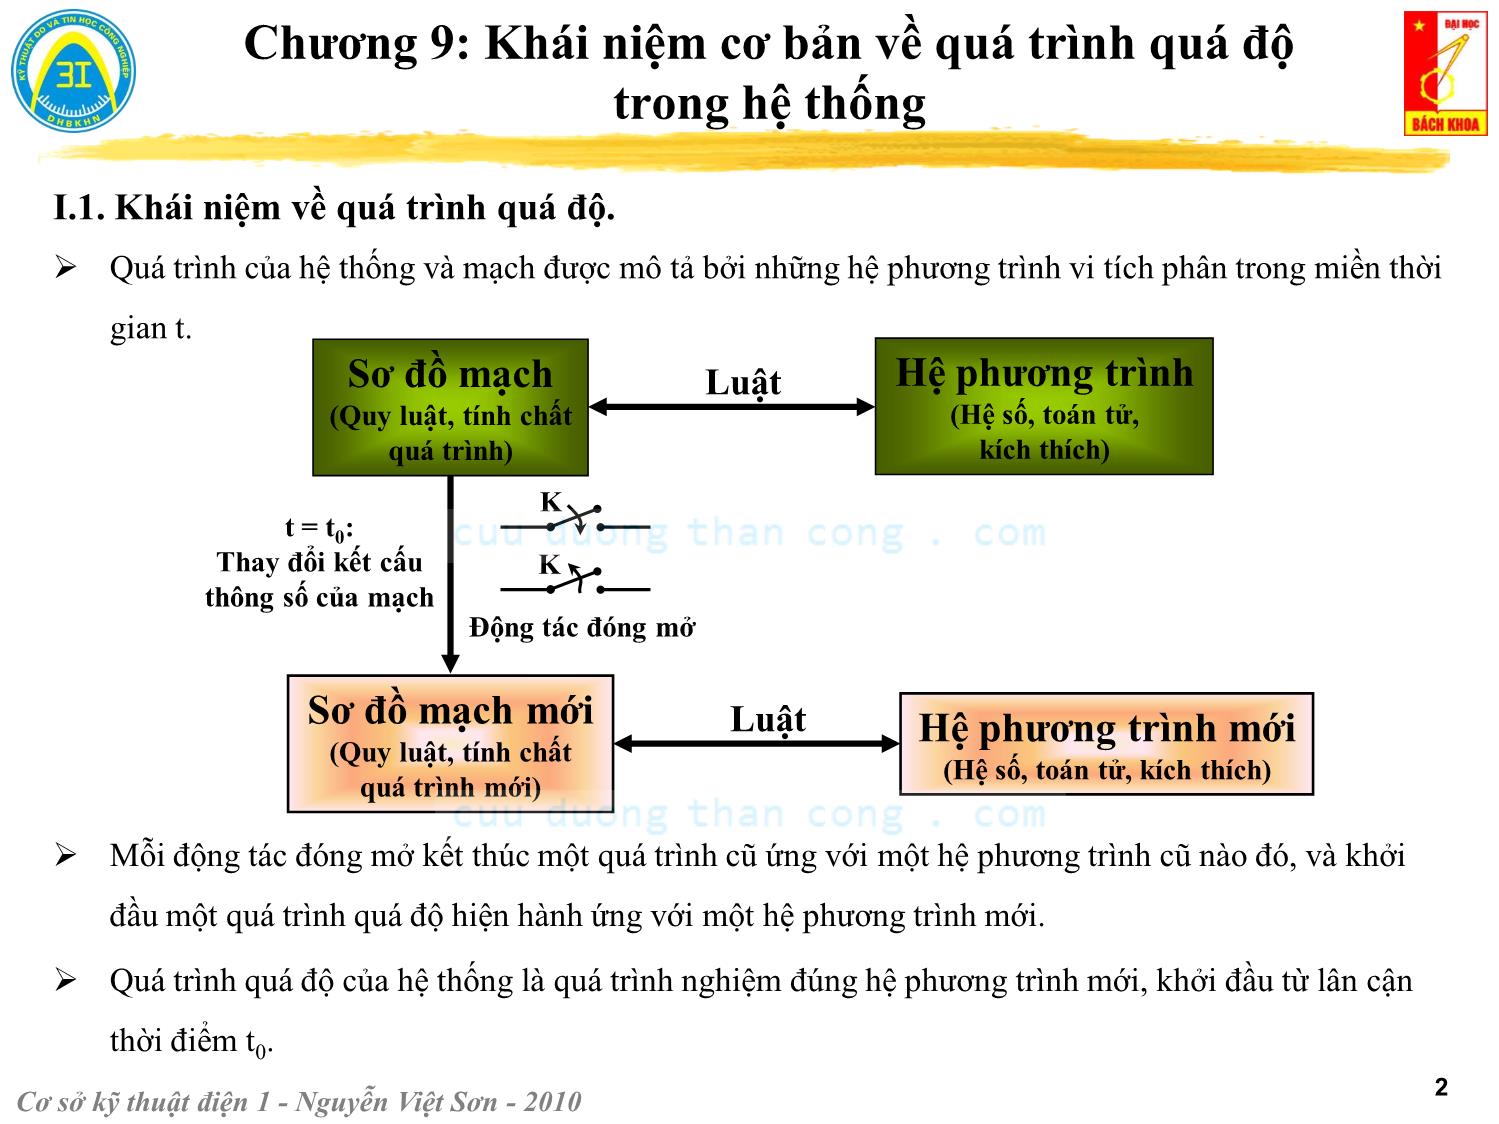 Bài giảng Kỹ thuật điện 1 - Chương 9: Khái niệm cơ bản về quá trình quá độ trong hệ thống - Nguyễn Việt Sơn trang 2